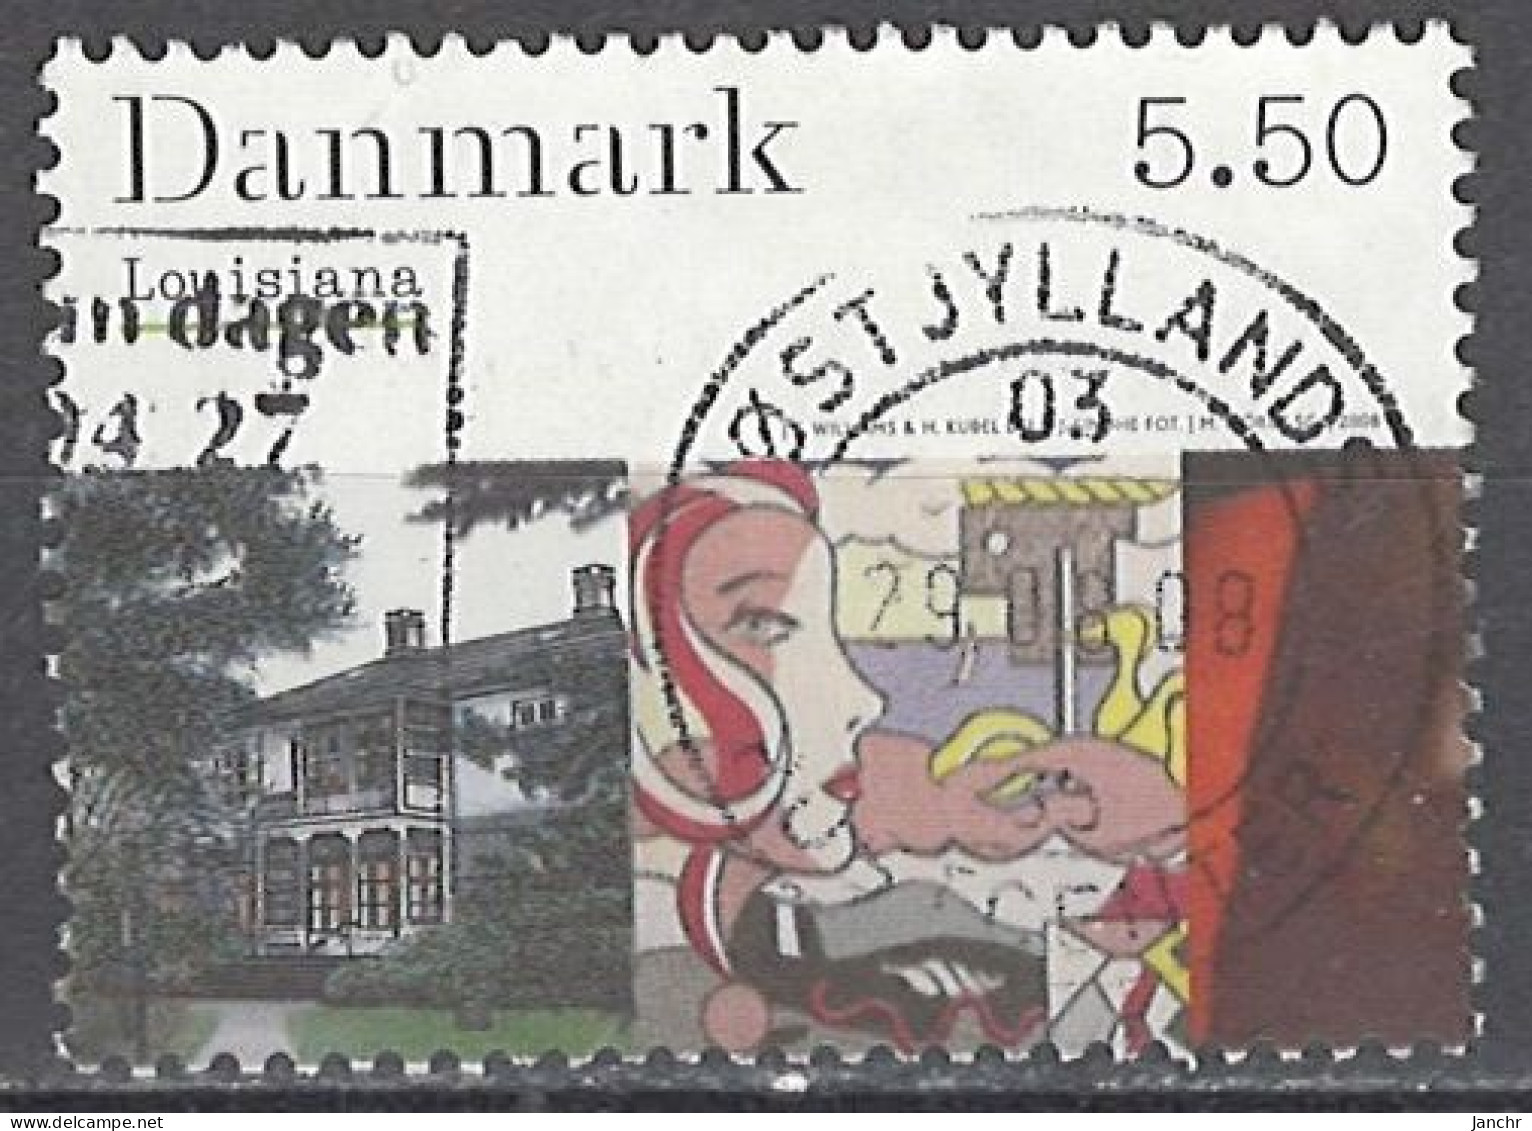 Denmark 2008. Mi.Nr. 1497, Used O - Gebraucht